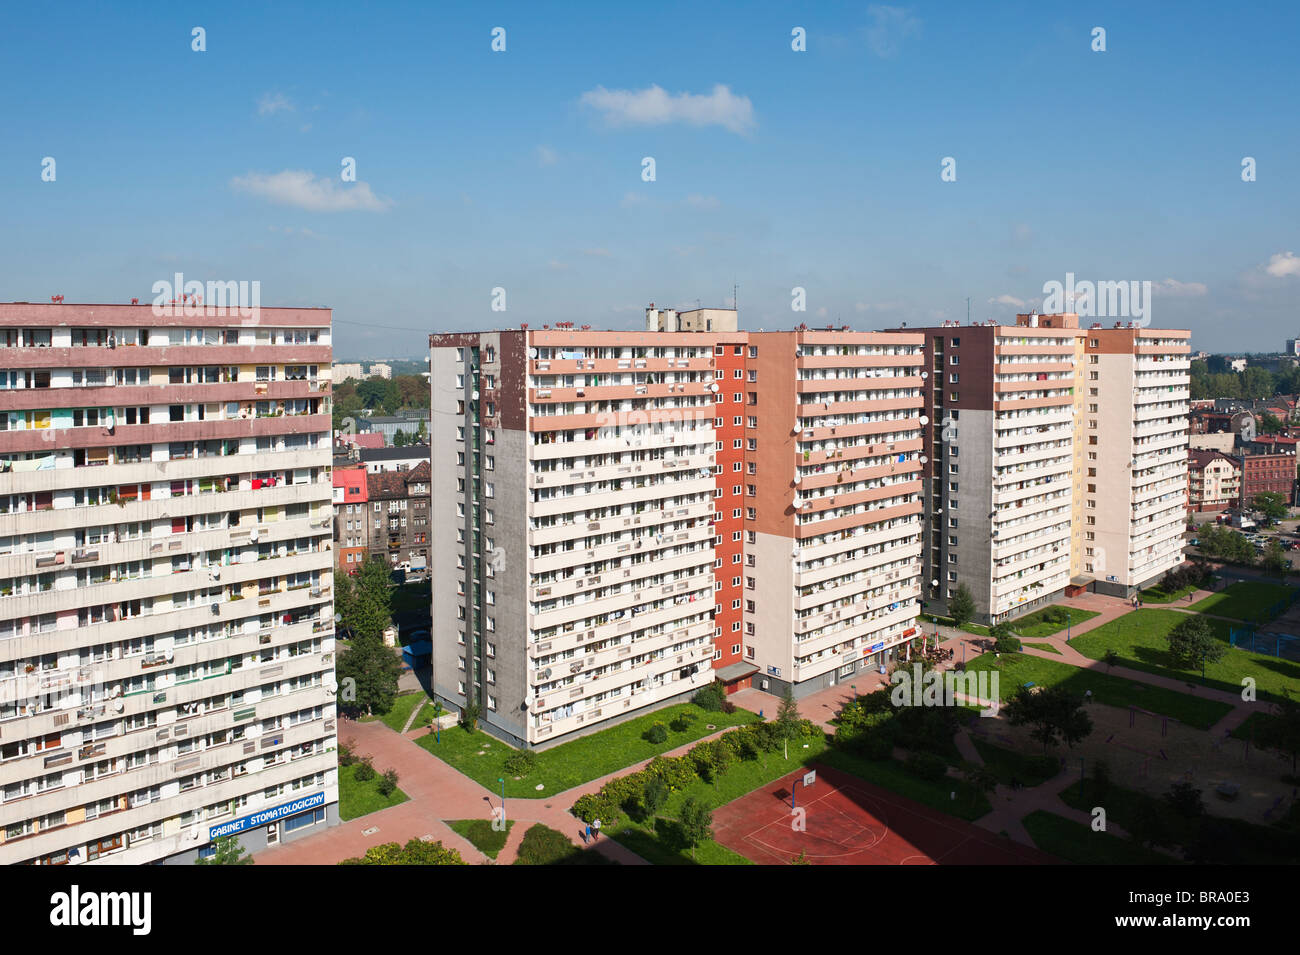 Tower block apartments, Chorzow, Poland Stock Photo